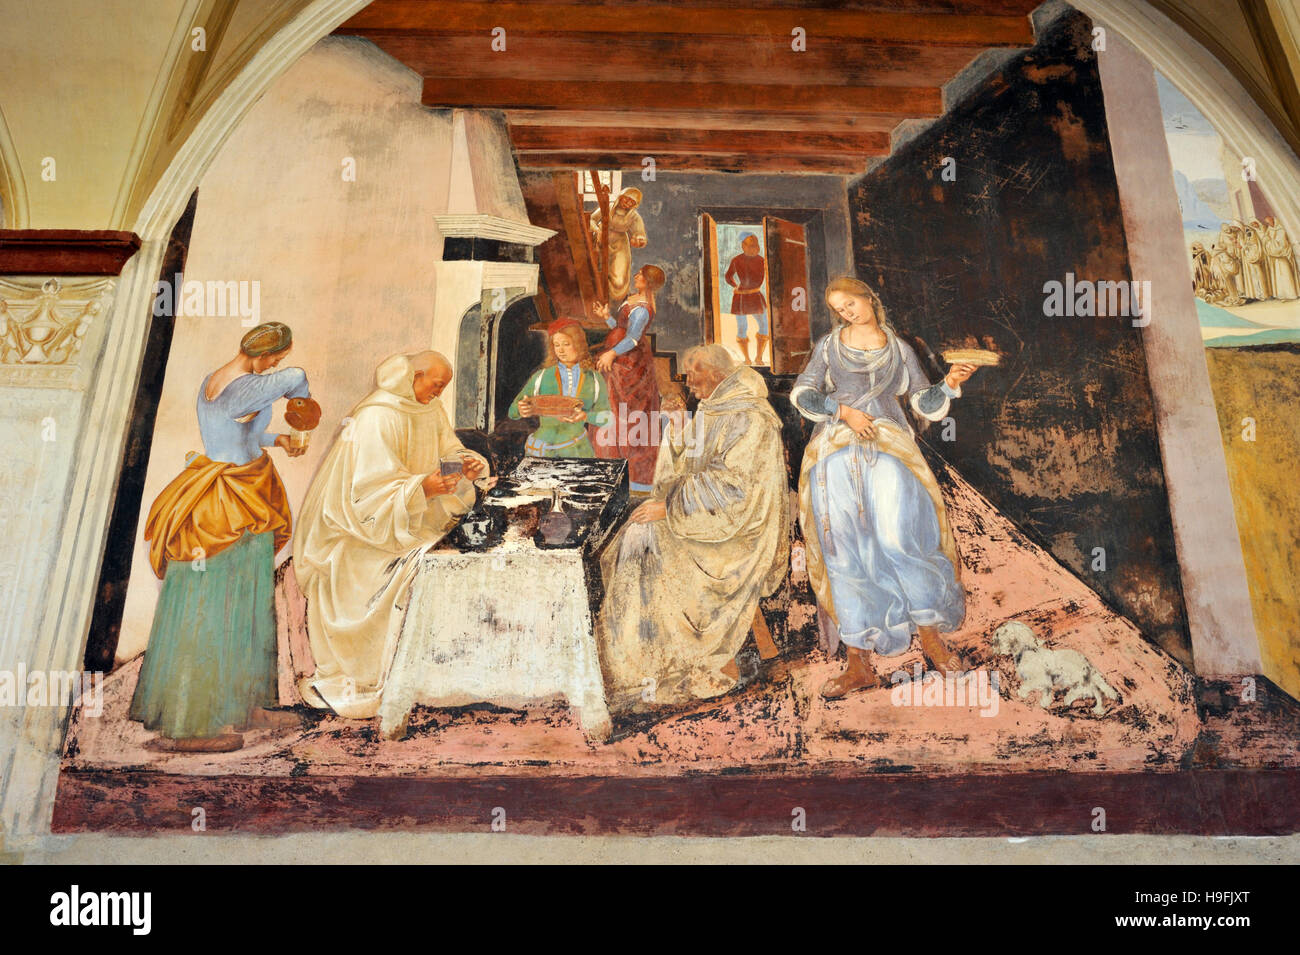 Fresques de la Renaissance, St Benoît LIFE, peinture par Luca Signorelli, côté ouest du Grand cloître, Abbaye de Monte Oliveto Maggiore, Toscane, Italie Banque D'Images